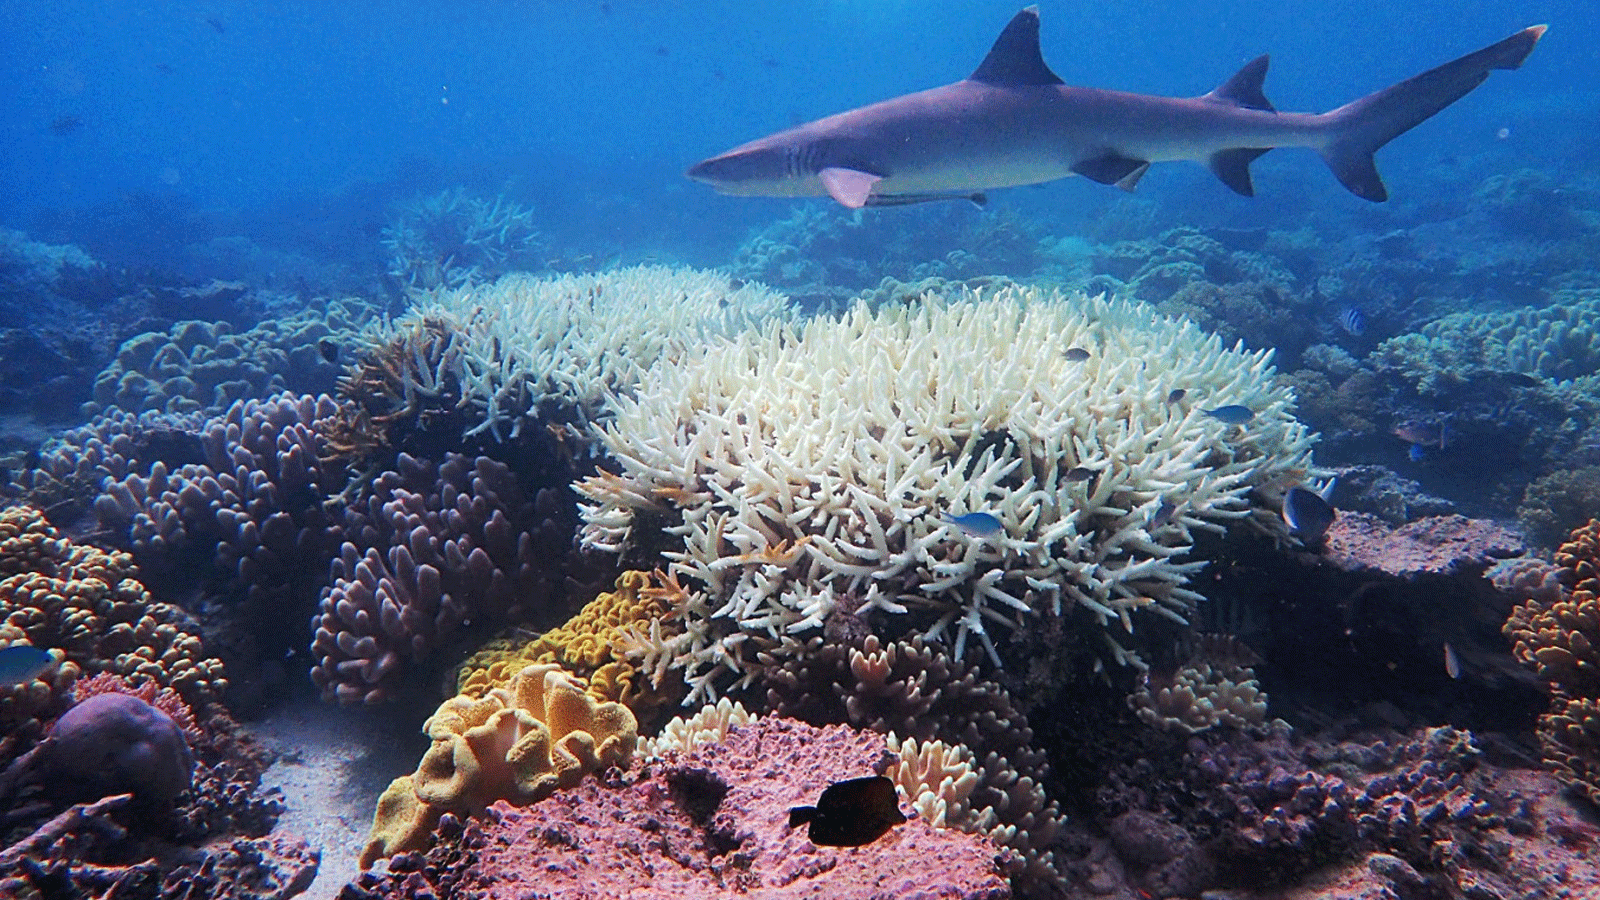 صورة للحاجز المرجاني العظيم نشرها مركز التميز التابع لـ ARC لدراسات الشعاب المرجانية بجامعة جيمس كوكفي بتاريخ 6 نيسان/أبريل 2020 